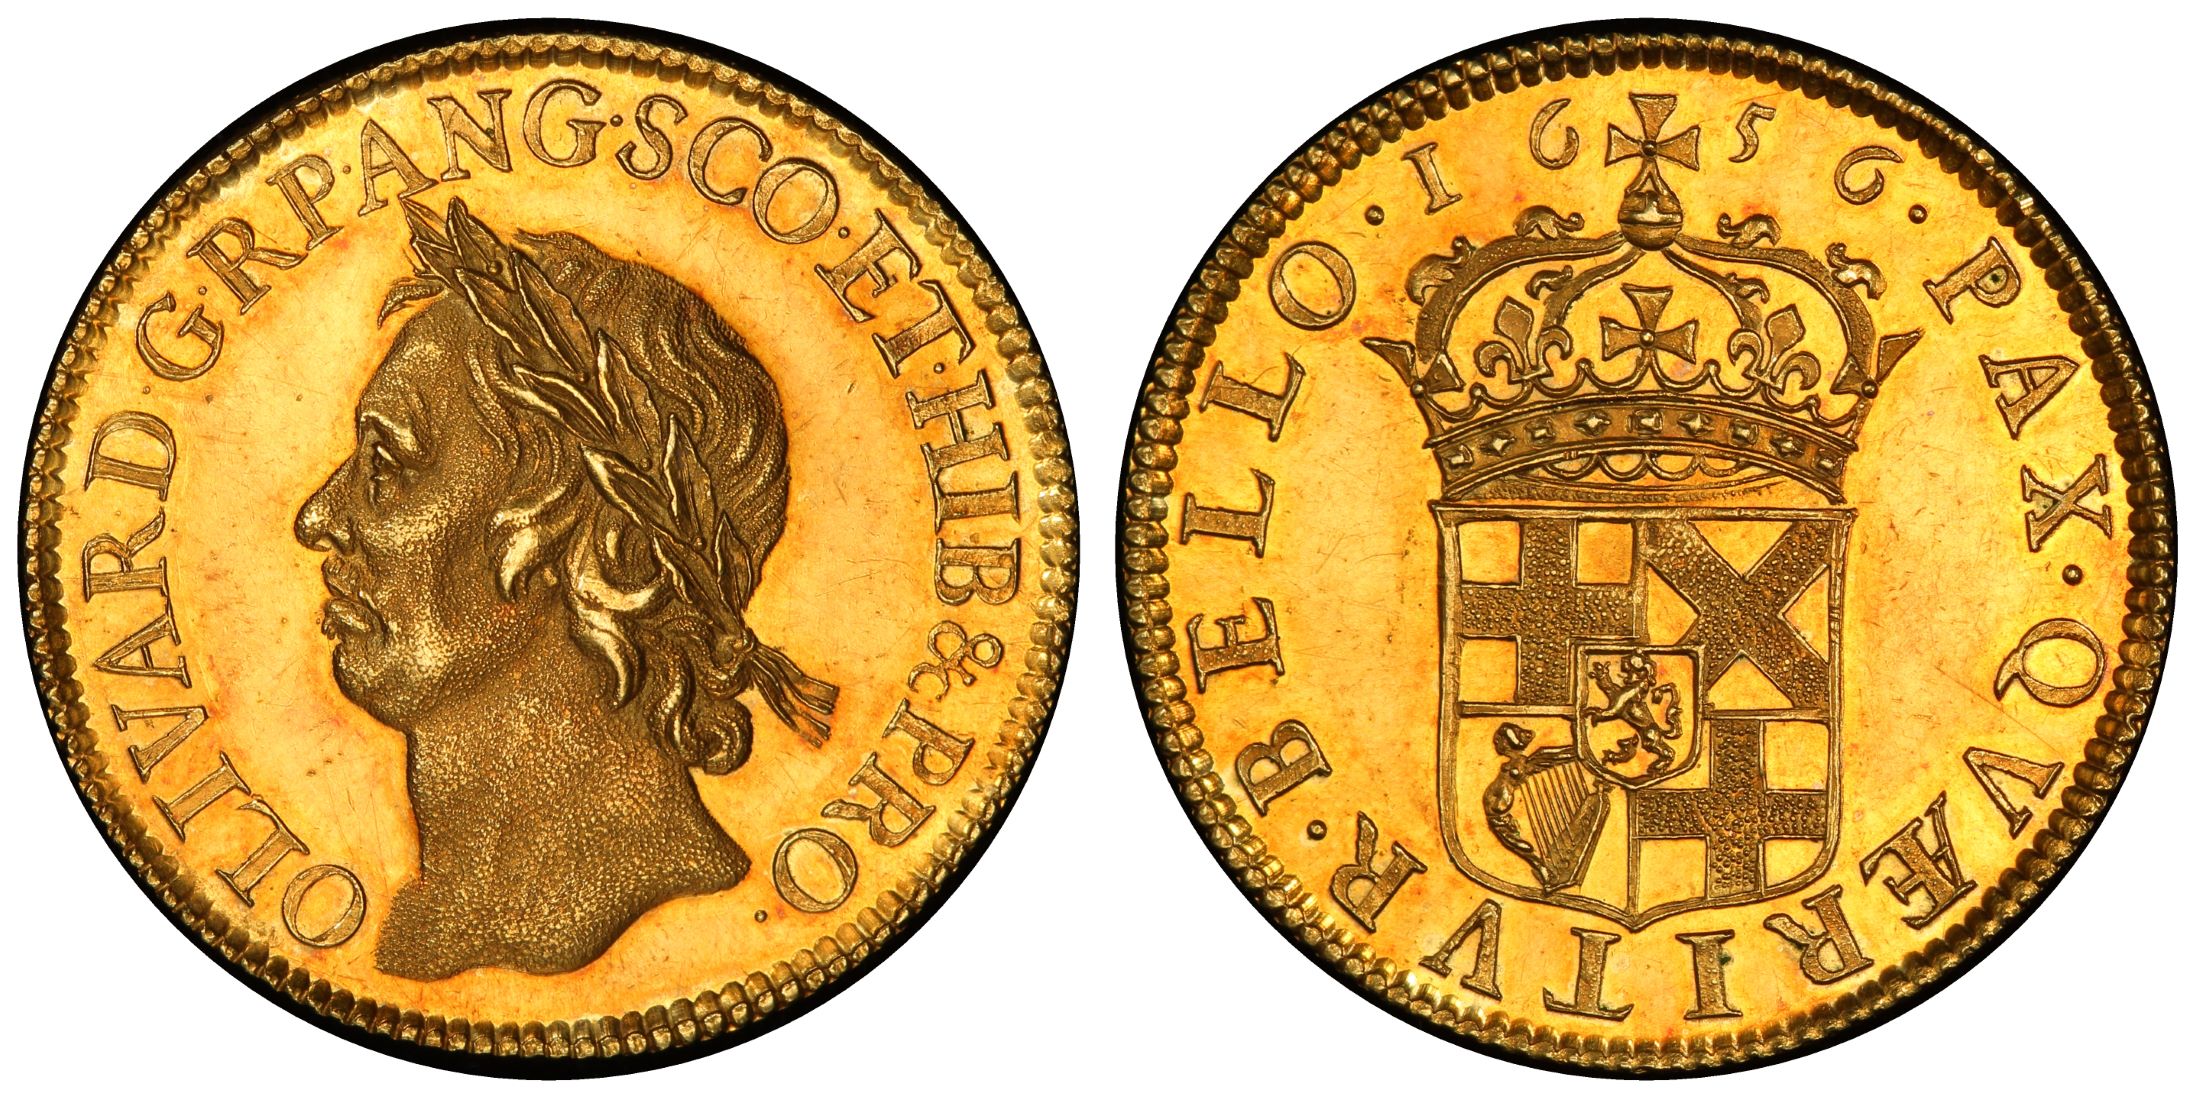 部 12 イギリス大英帝国への道 17世紀 クロムウェル ウィリアム 世 アンティークコインで資産防衛 ユニバーサルコイン